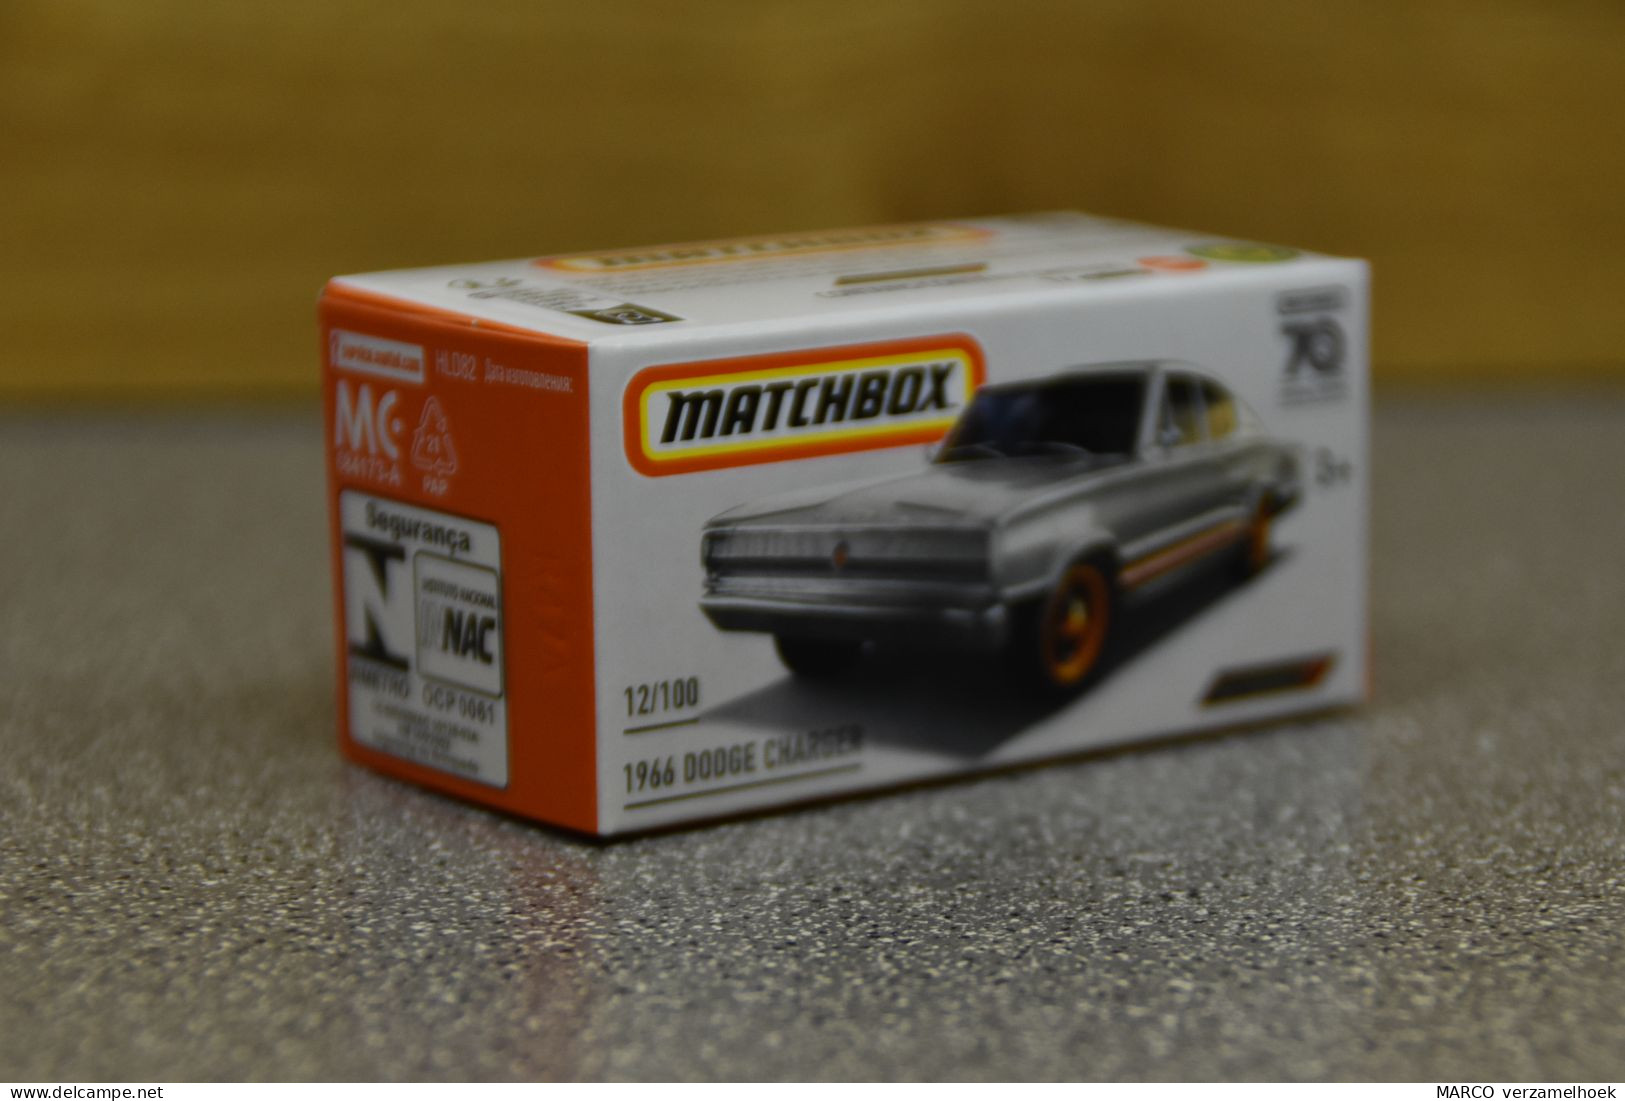 Mattel - Matchbox 70 Years 12/100 1966 Dodge Charger - Matchbox (Mattel)